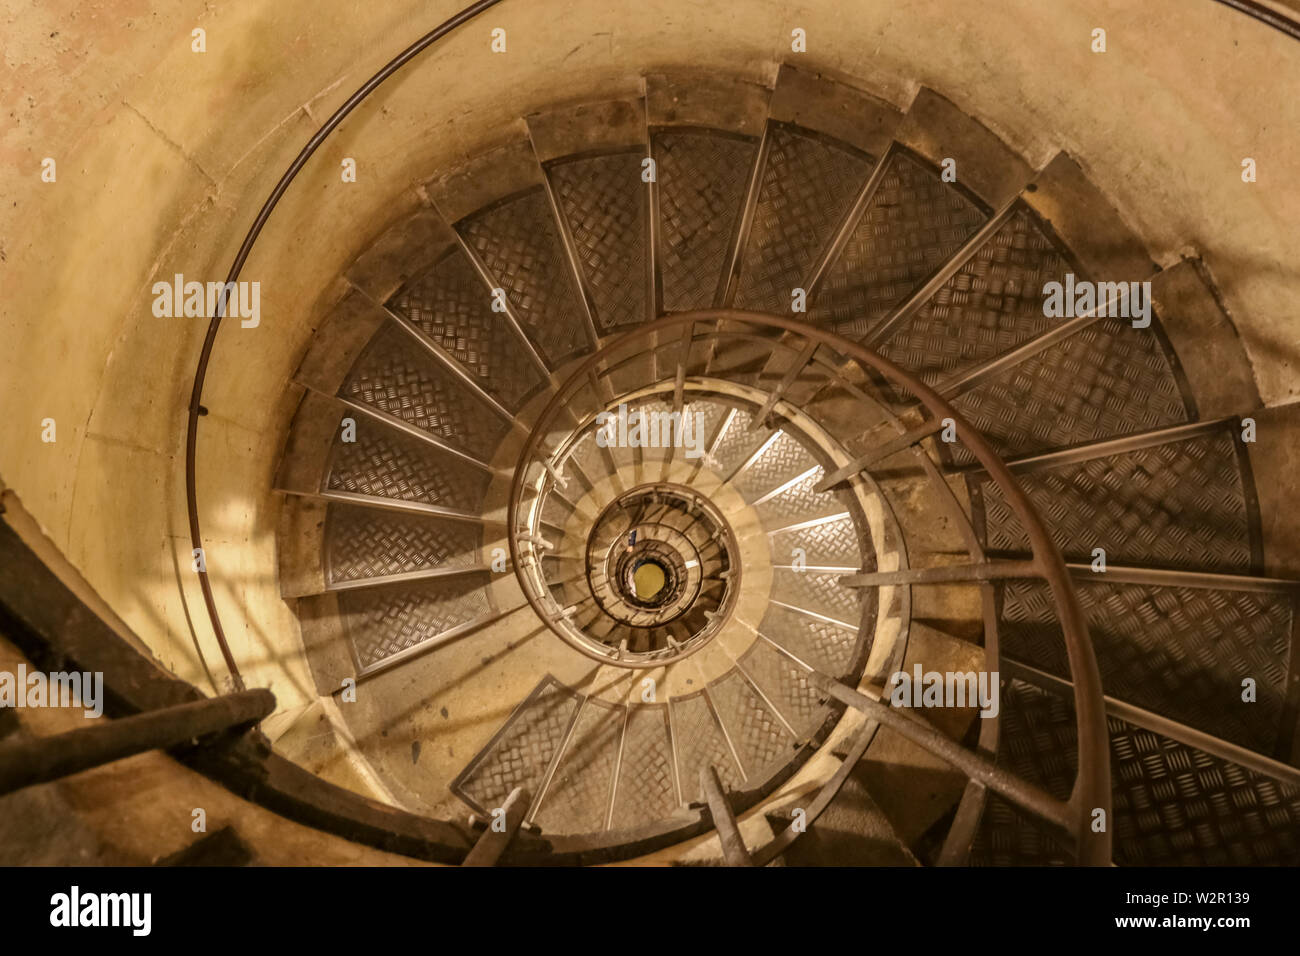 Interesante imagen de la escalera de caracol en el Arco de Triunfo, como una espiral logarítmica de un shell nautilus y algunos caracoles. Una espiral... Foto de stock